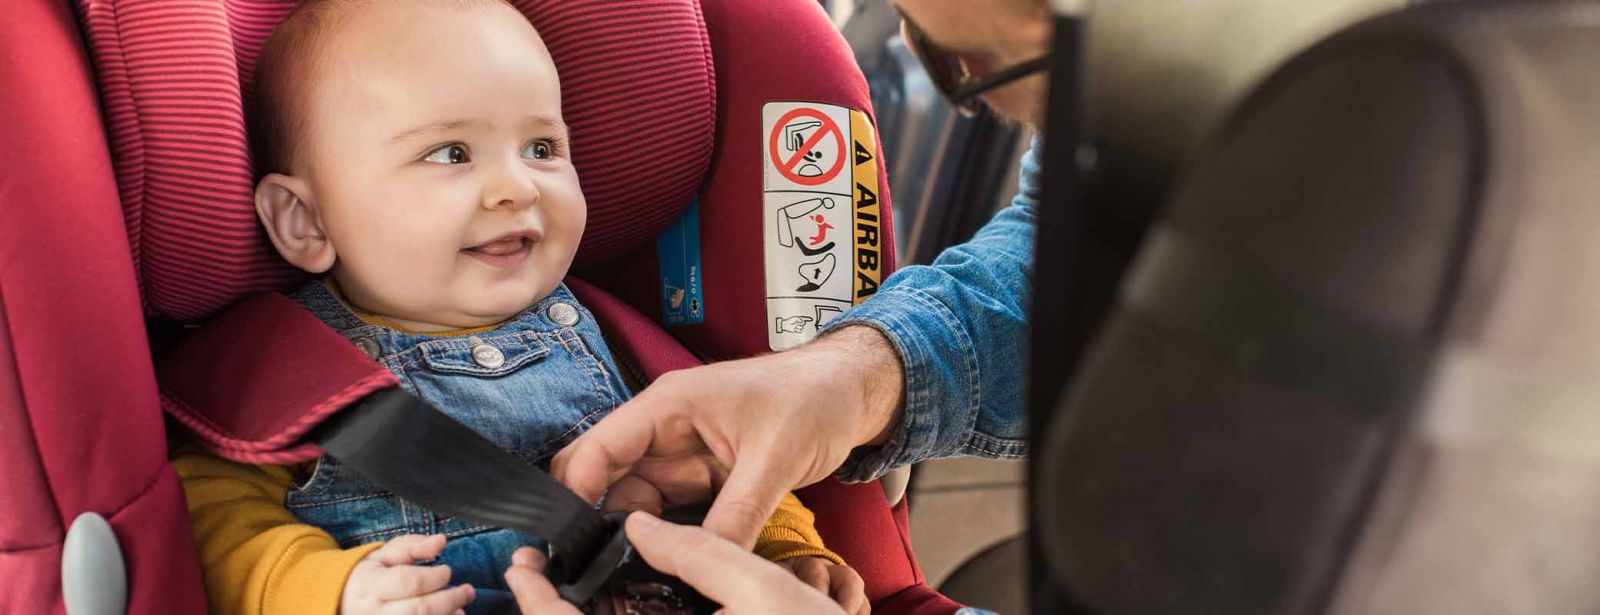 Kindersitzpflicht: Wann darf das Kind ohne Kindersitz fahren?